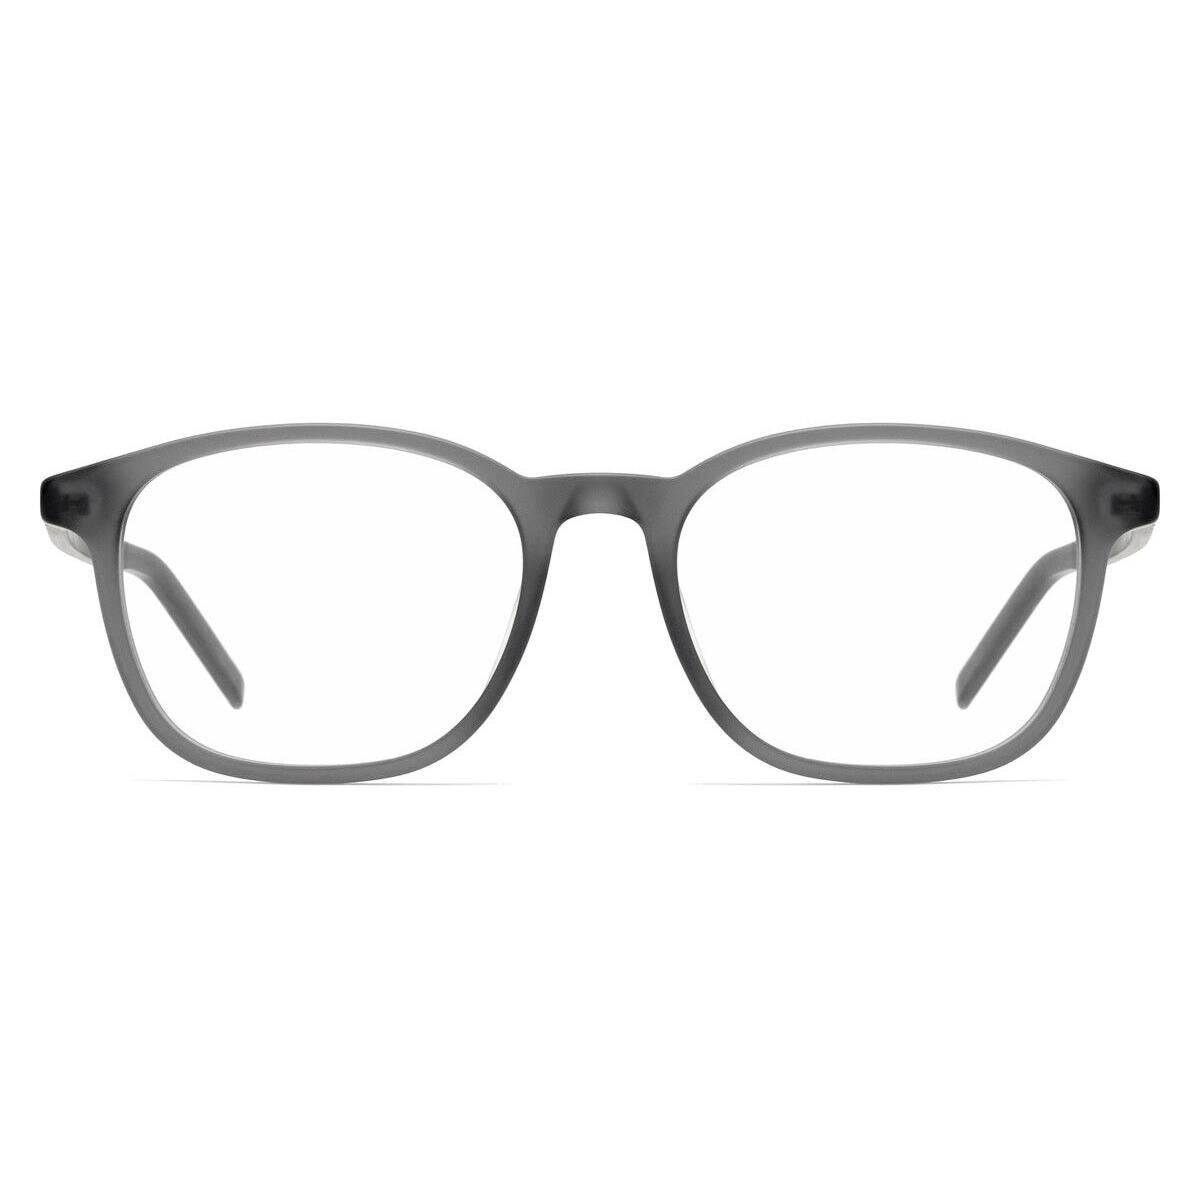 Hugo Boss 1024 Eyeglasses Men 0RIW Matte Gray Square 51mm